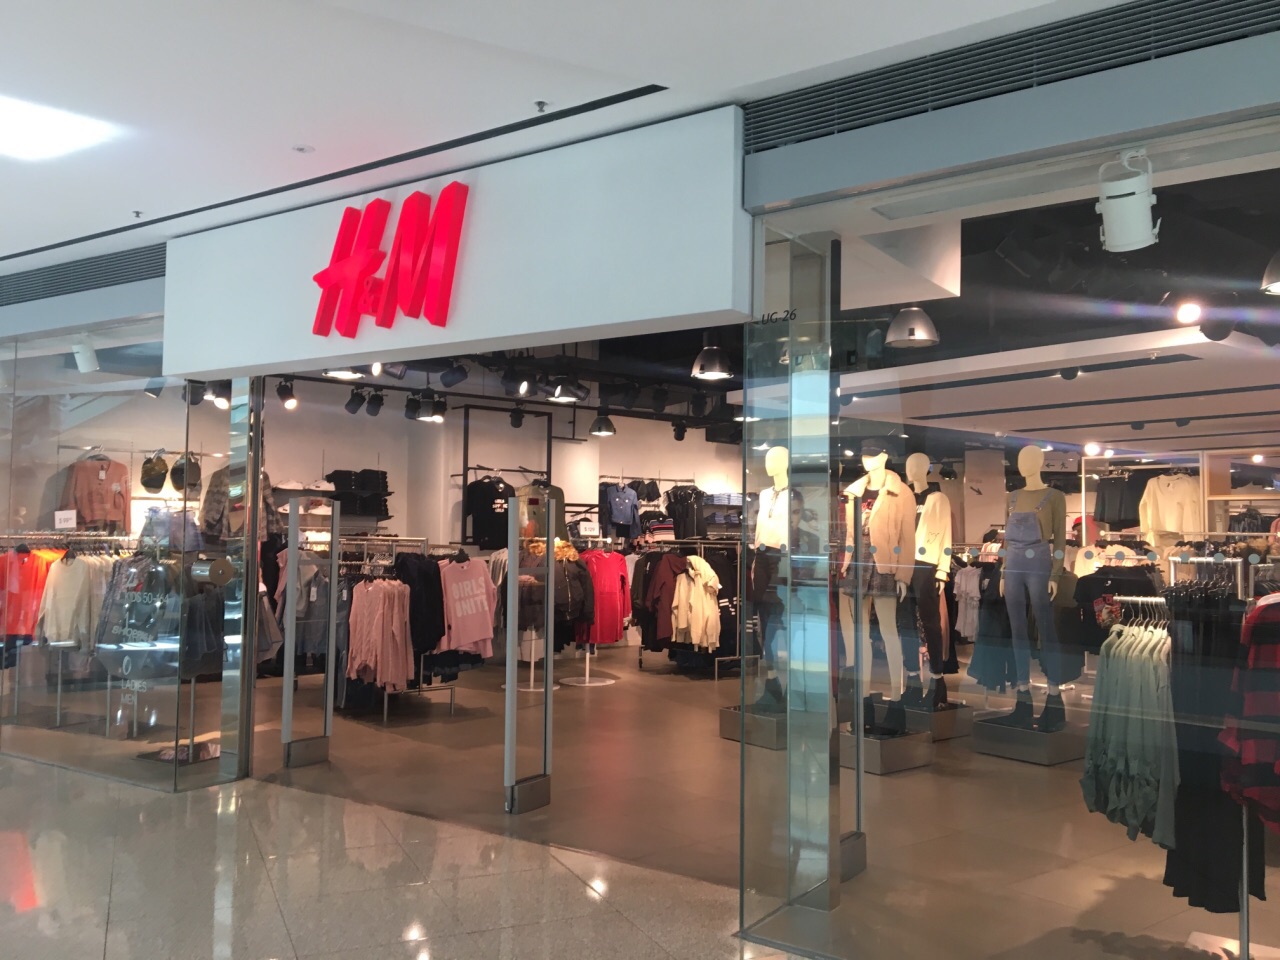 携程攻略 香港h M 九龙塘店 购物 H Amp M Zara 优衣库 这都是全球颇有名气的快消品服饰品牌